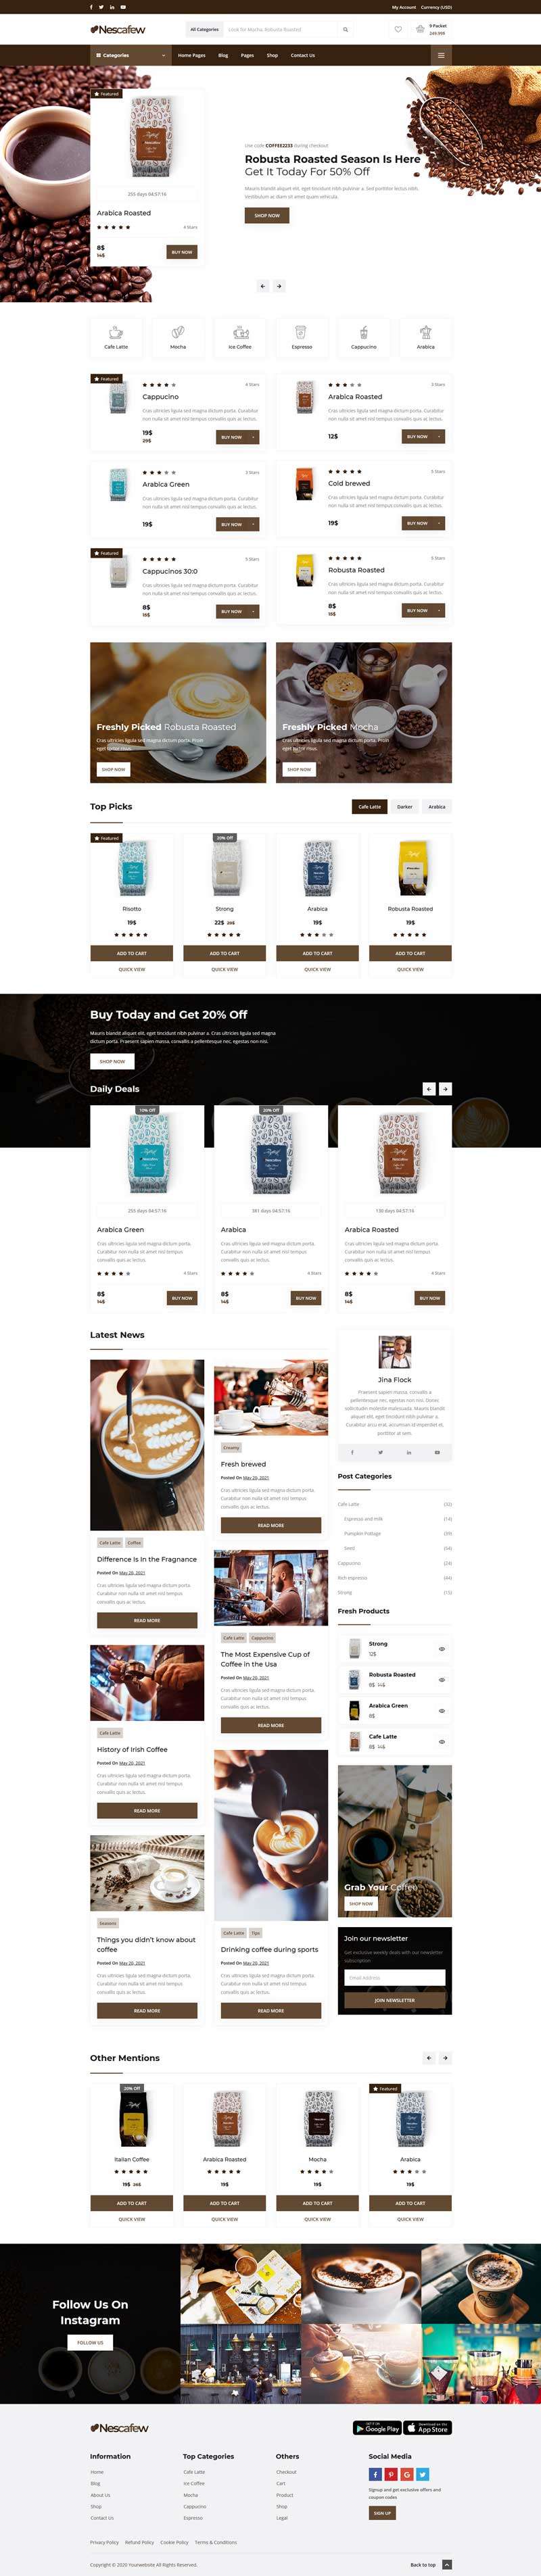 响应式咖啡店铺电商网站HTML模板6832